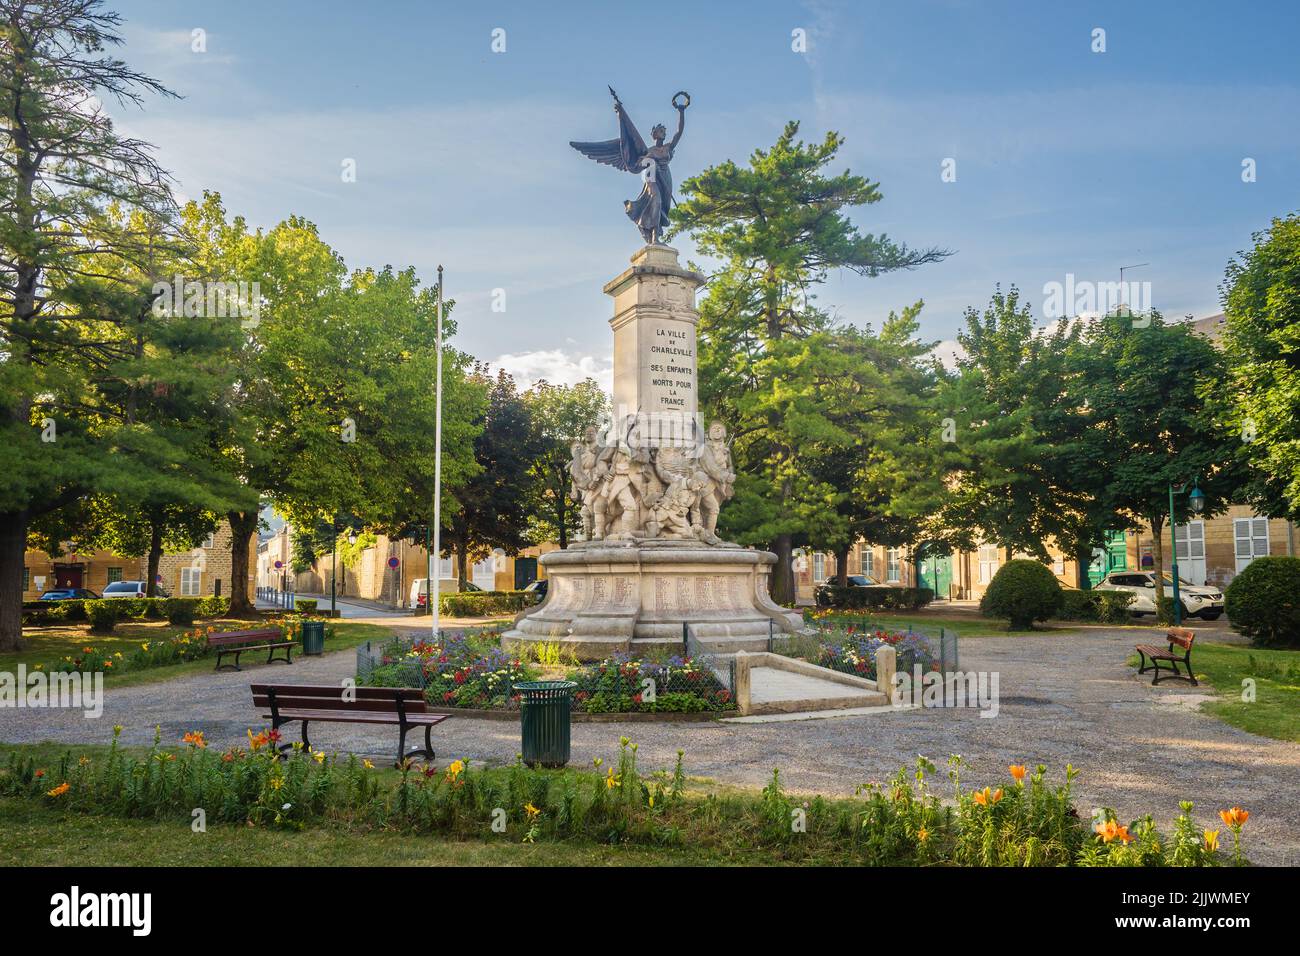 14.07.2 22 Charleville-Mézières, Ardennest, Gran d Est, France. Monument aux morts dans le square de la place Winston Churchill Stock Photo